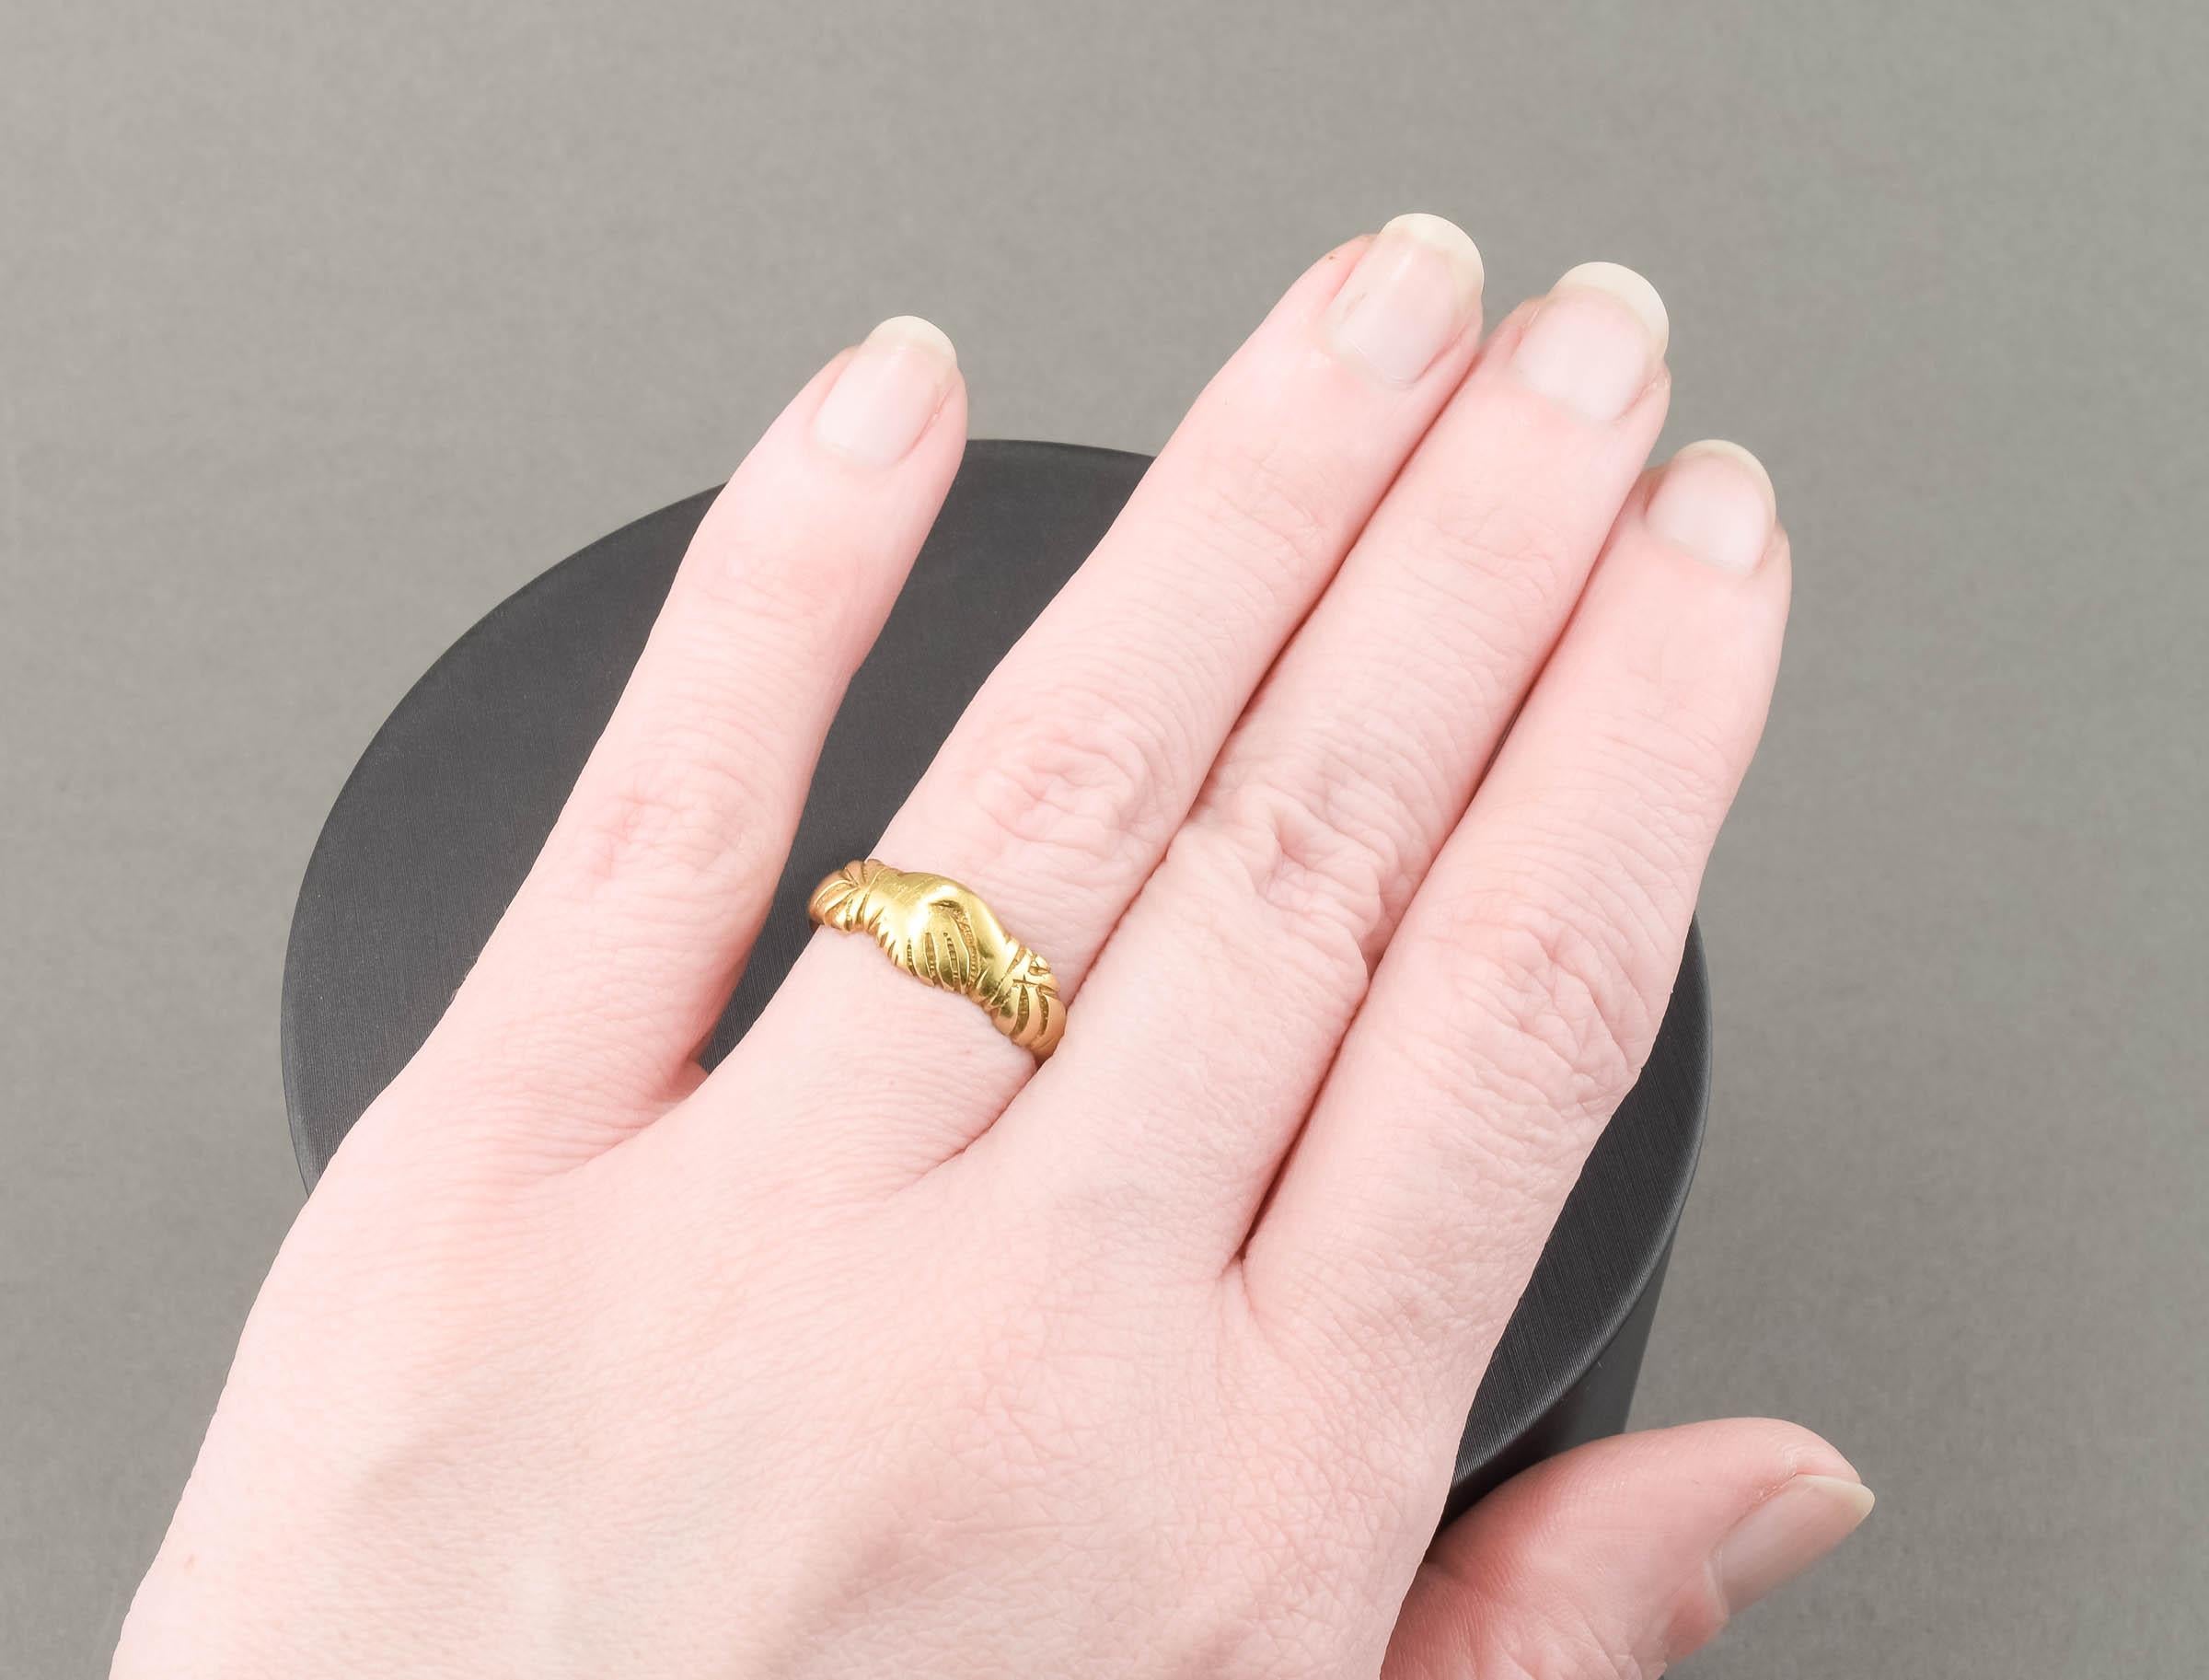 Fabriquée en or pur 18 carats, la bague représente le symbole éternel de l'amour, de l'amitié et du partenariat - deux mains jointes. (Les anneaux de Fede remontent aux IIIe et IVe siècles et sont devenus particulièrement populaires au Moyen Âge.